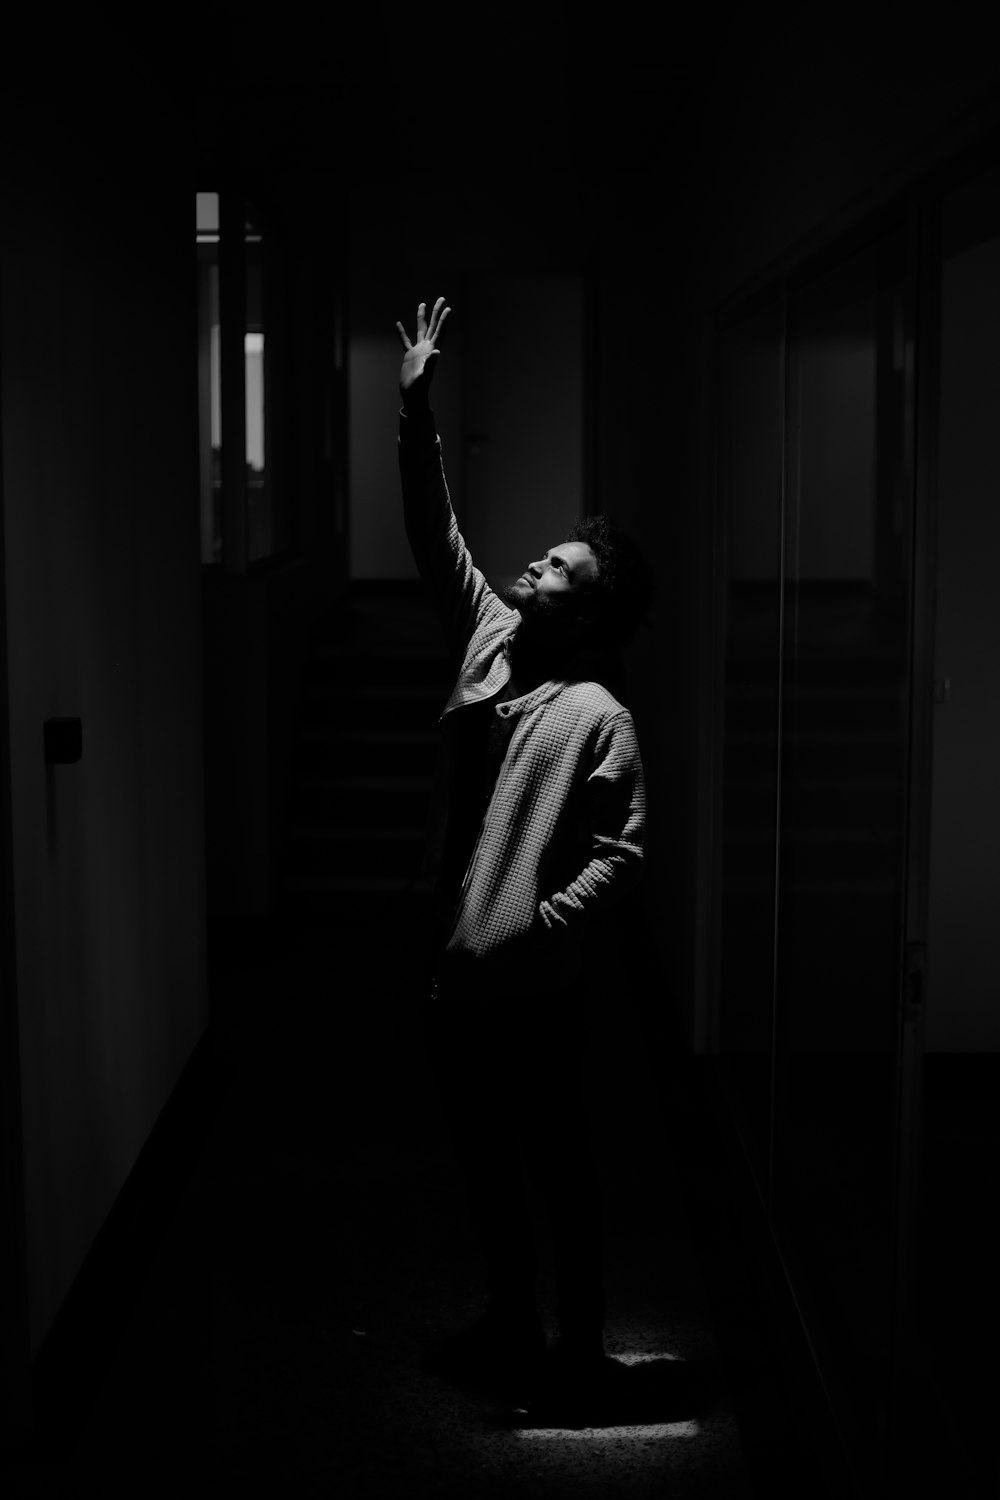 Una persona parada en una habitación oscura extendiendo la mano